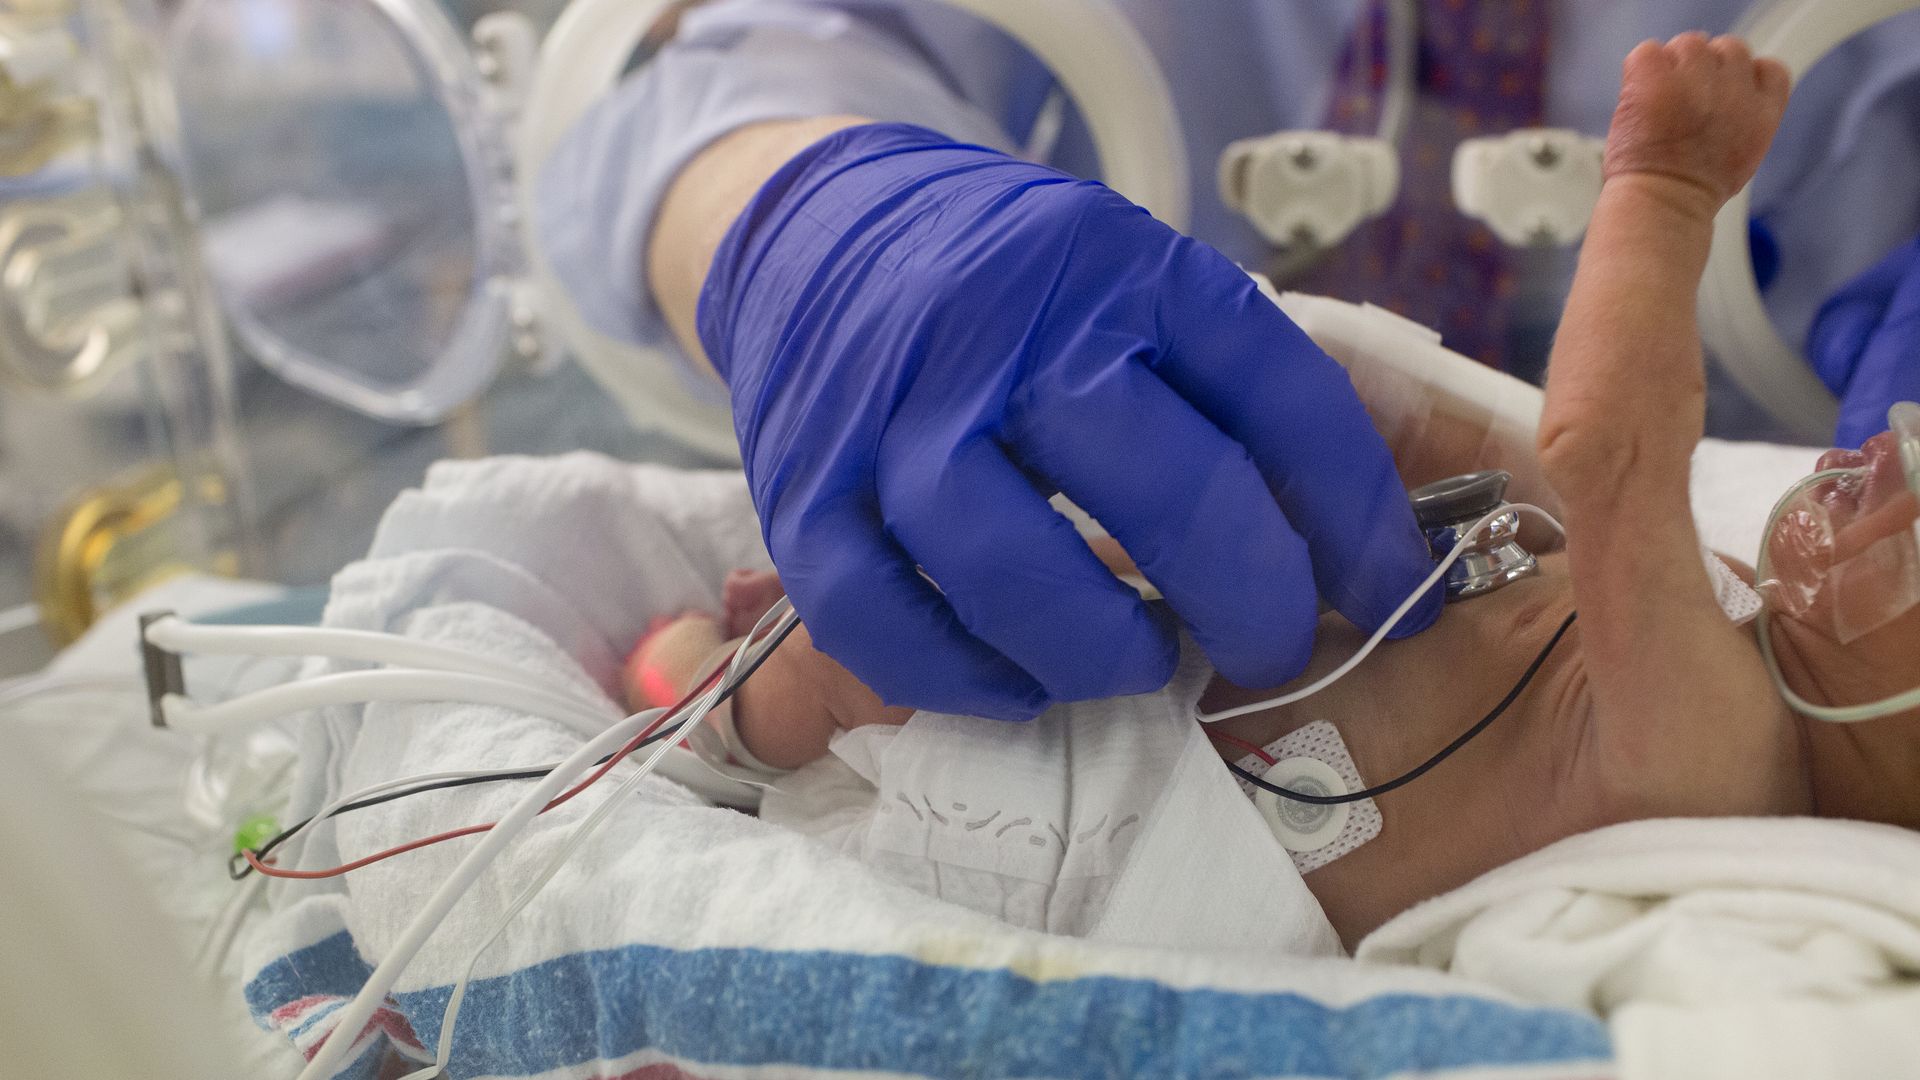 Premature baby in a hospital NICU unit